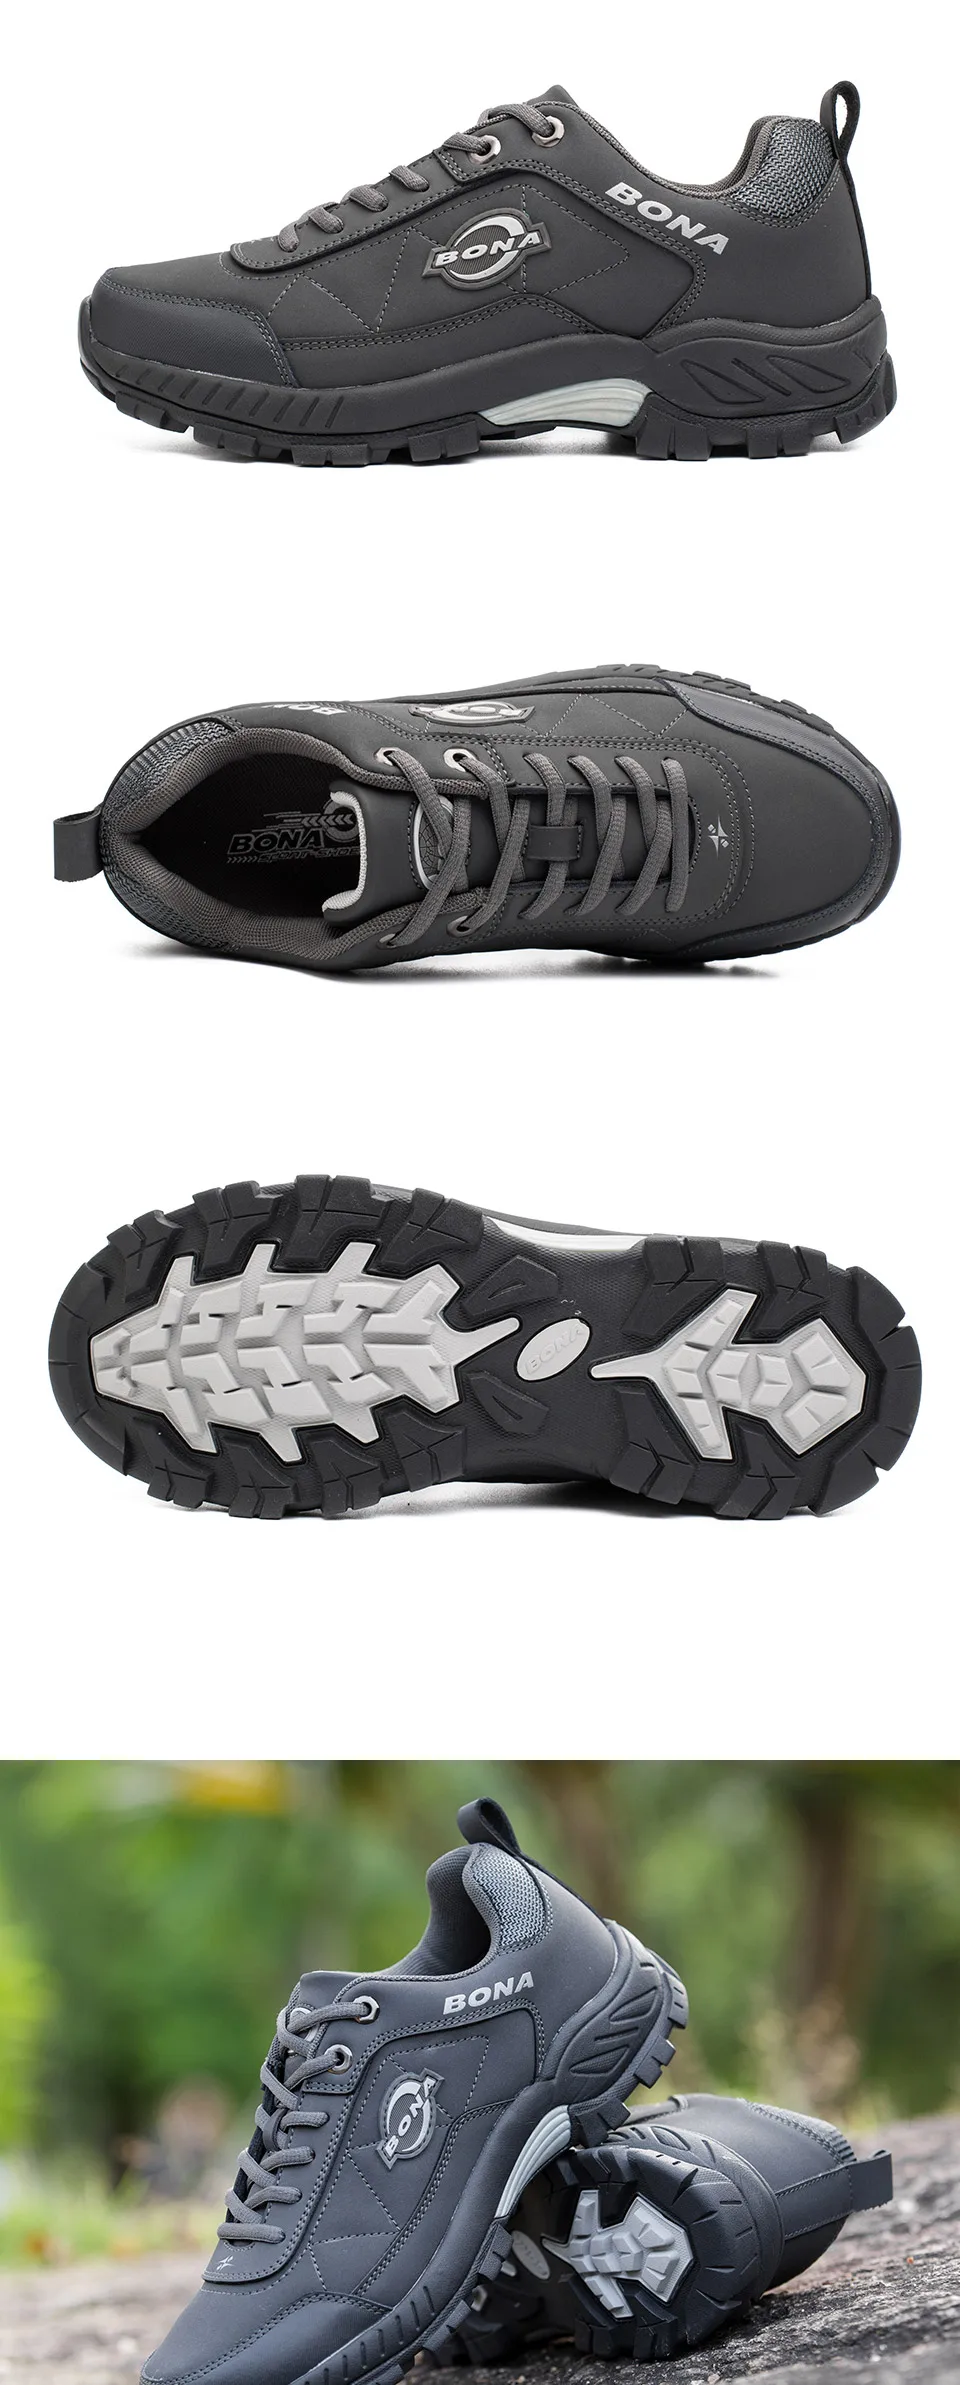 BONA новые типичные Stlye мужские треккинговые ботинки уличные беговые треккинговые кроссовки на шнуровке Мужская Спортивная обувь Удобная